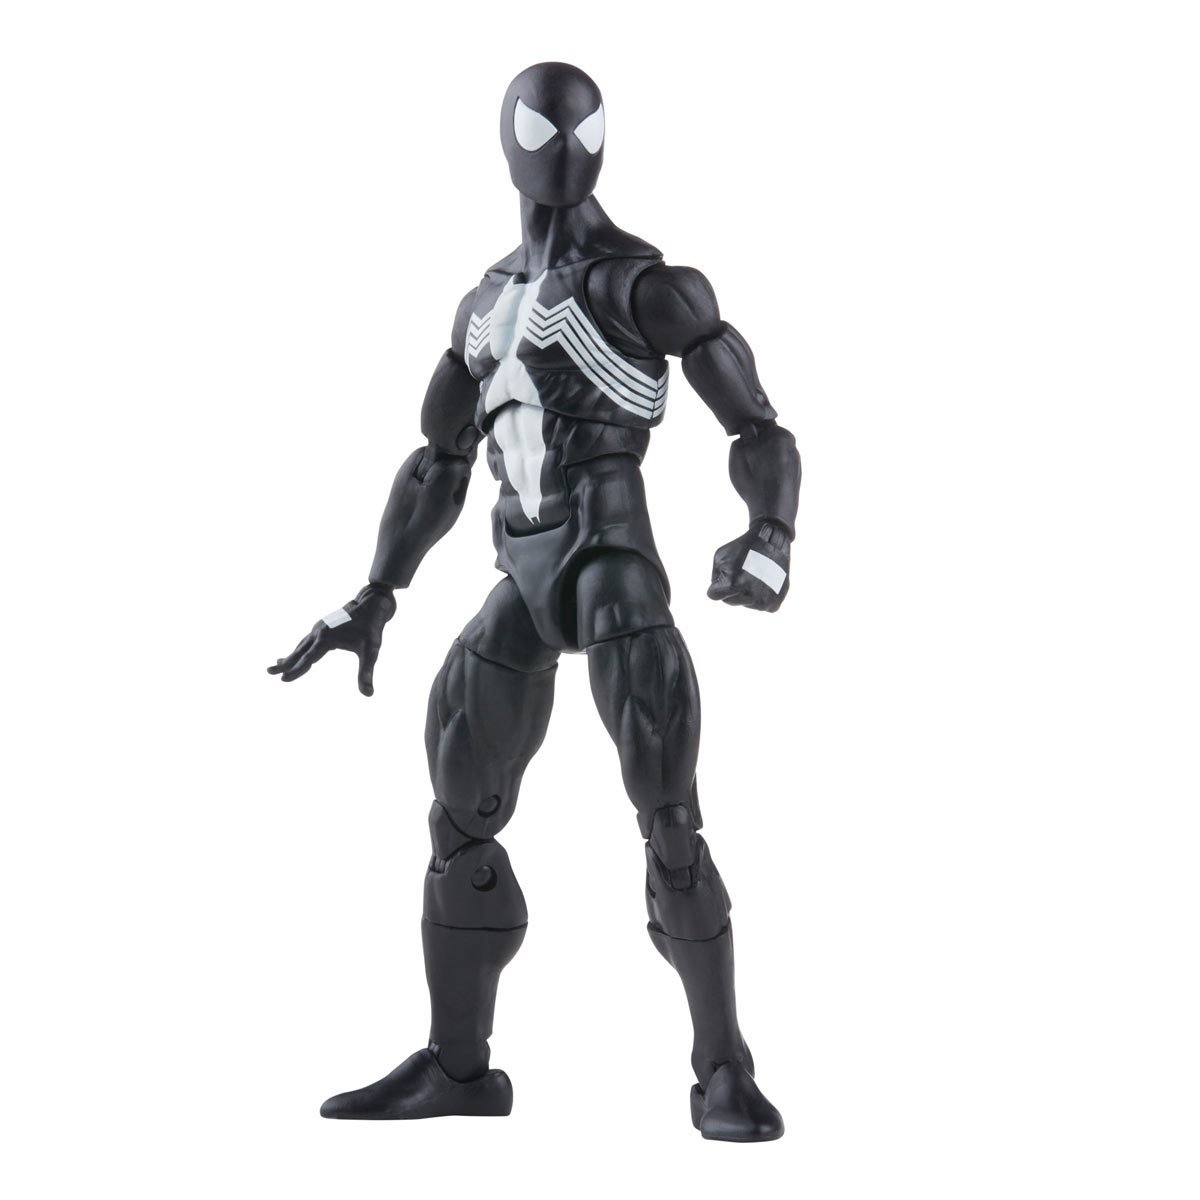 Marvel Comics - Retro - Spider-Man - Symbiote Spider Man